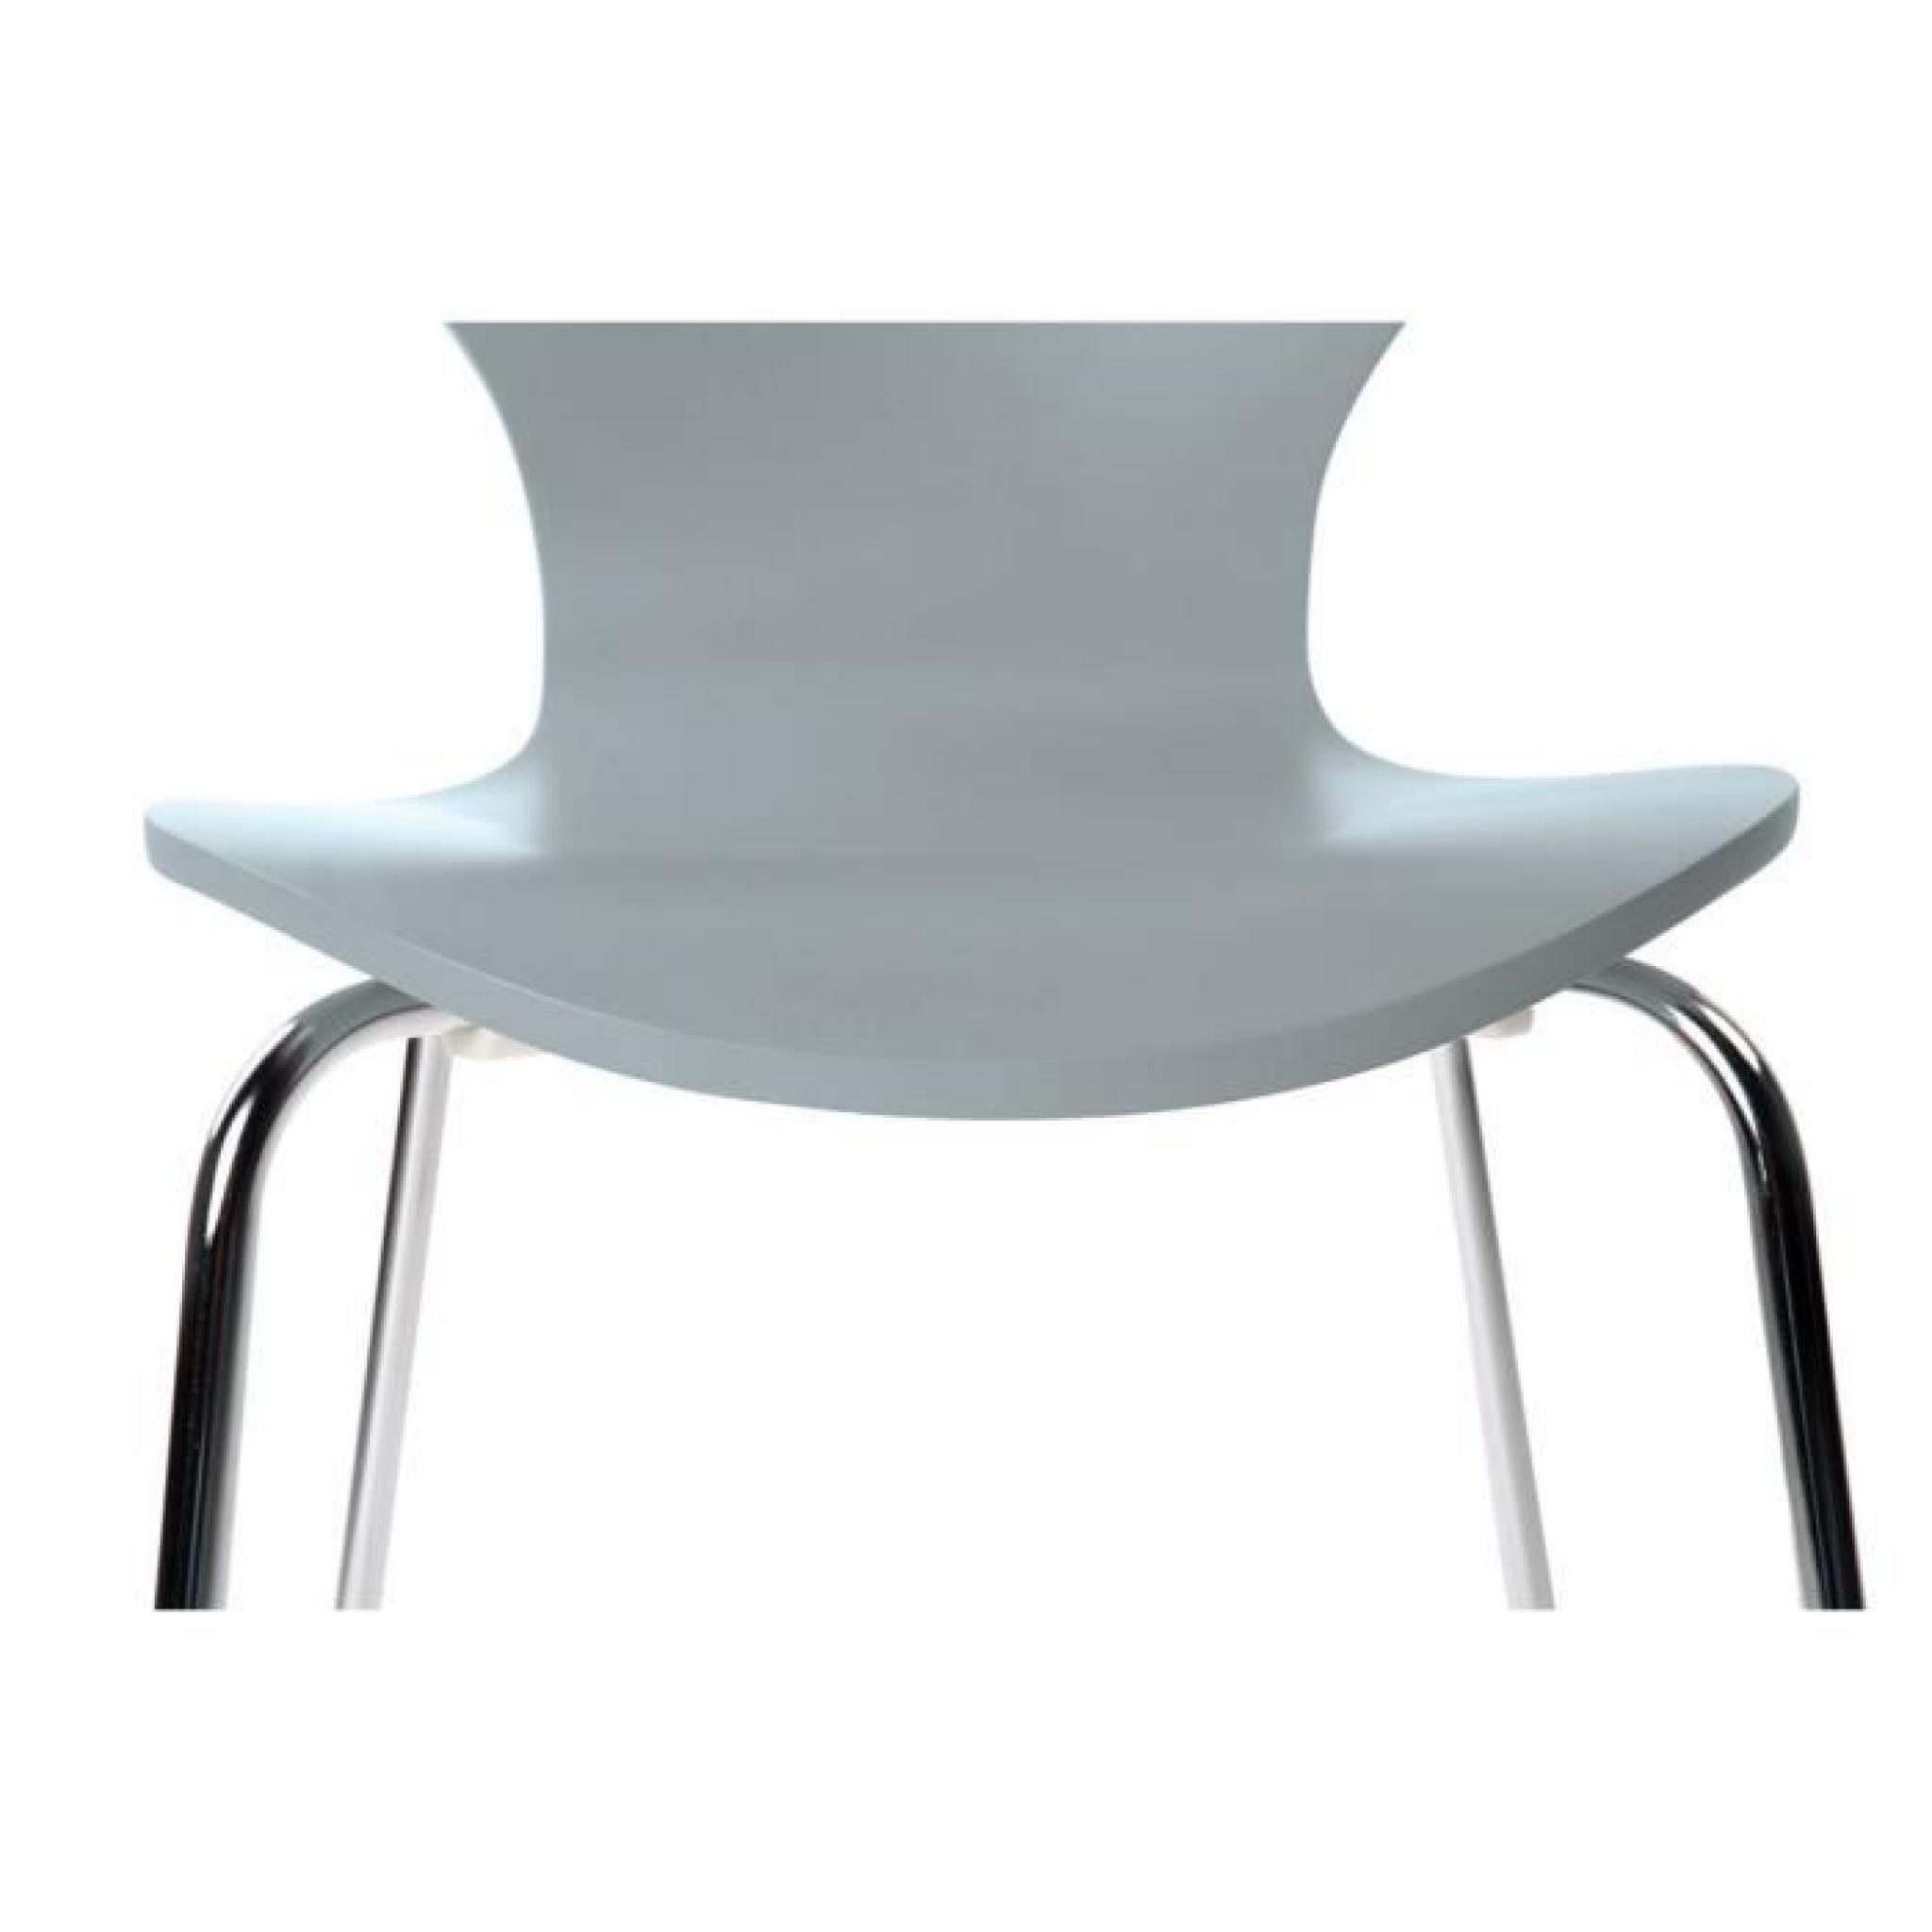 Lot de 2 chaises design empilables grises NEW ABIGAIL pas cher